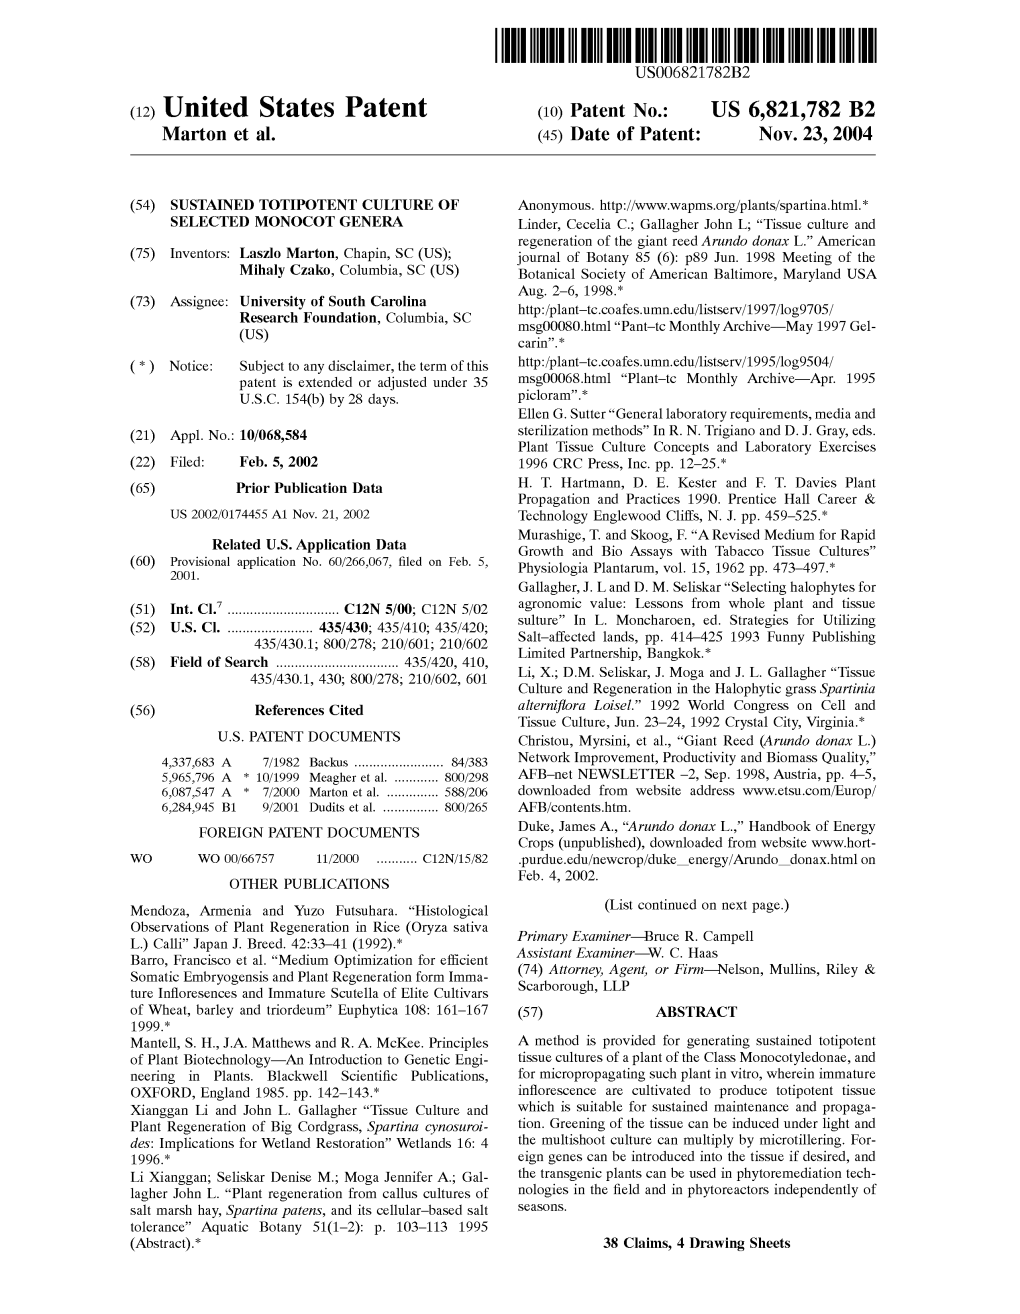 United States Patent (10) Patent N0.: US 6,821,782 B2 Marton Et Al